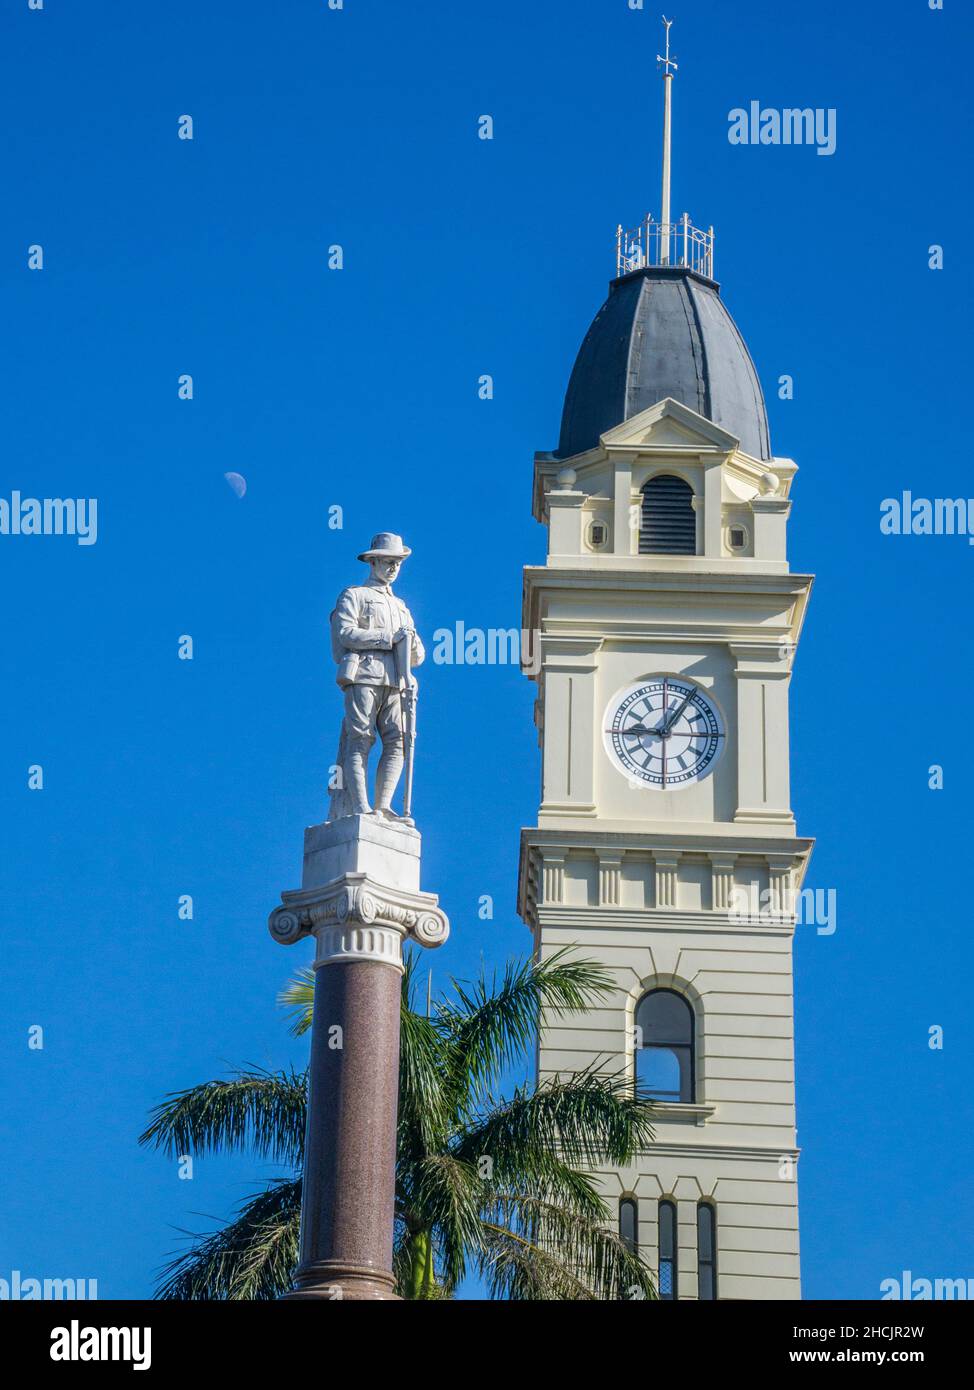 L'ufficio postale di Bundaburg, in stile tardo italiano, patrimonio dell'umanità dell'UNESCO, con l'iconica torre dell'orologio a 6 piani e il monumento commemorativo alla guerra di Bundaberg in marmo Foto Stock